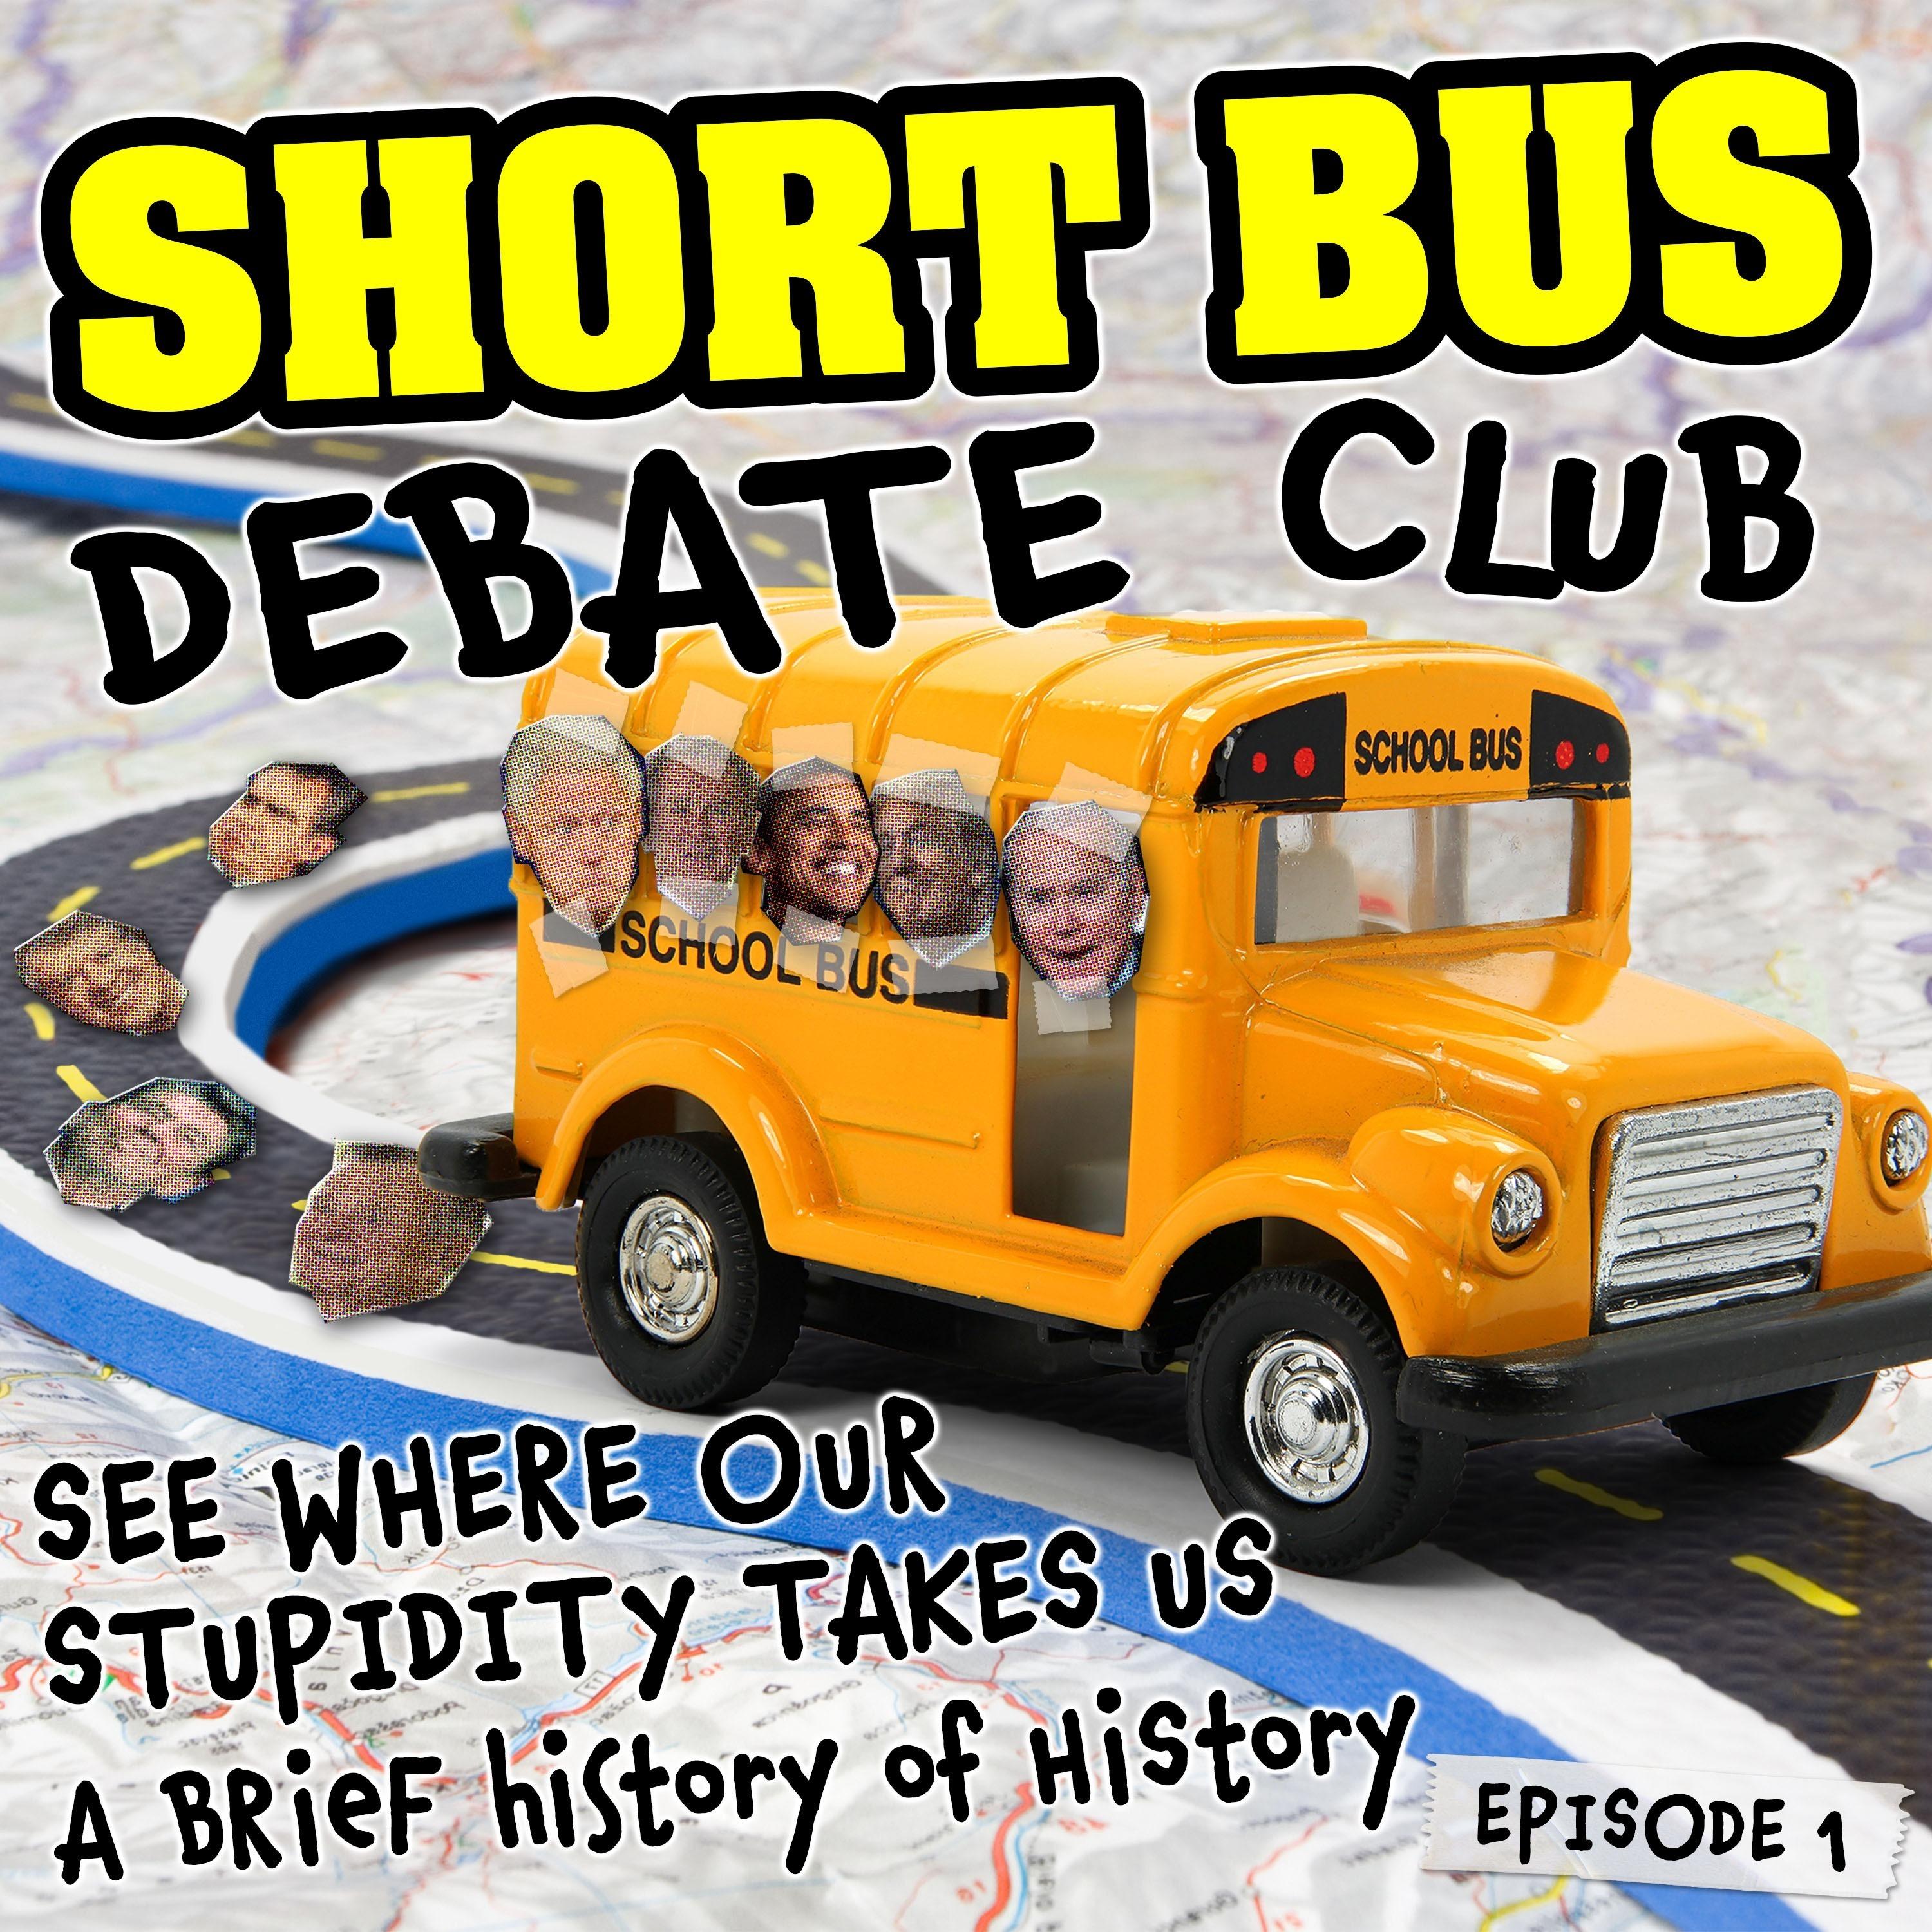 Short Bus Debate Club